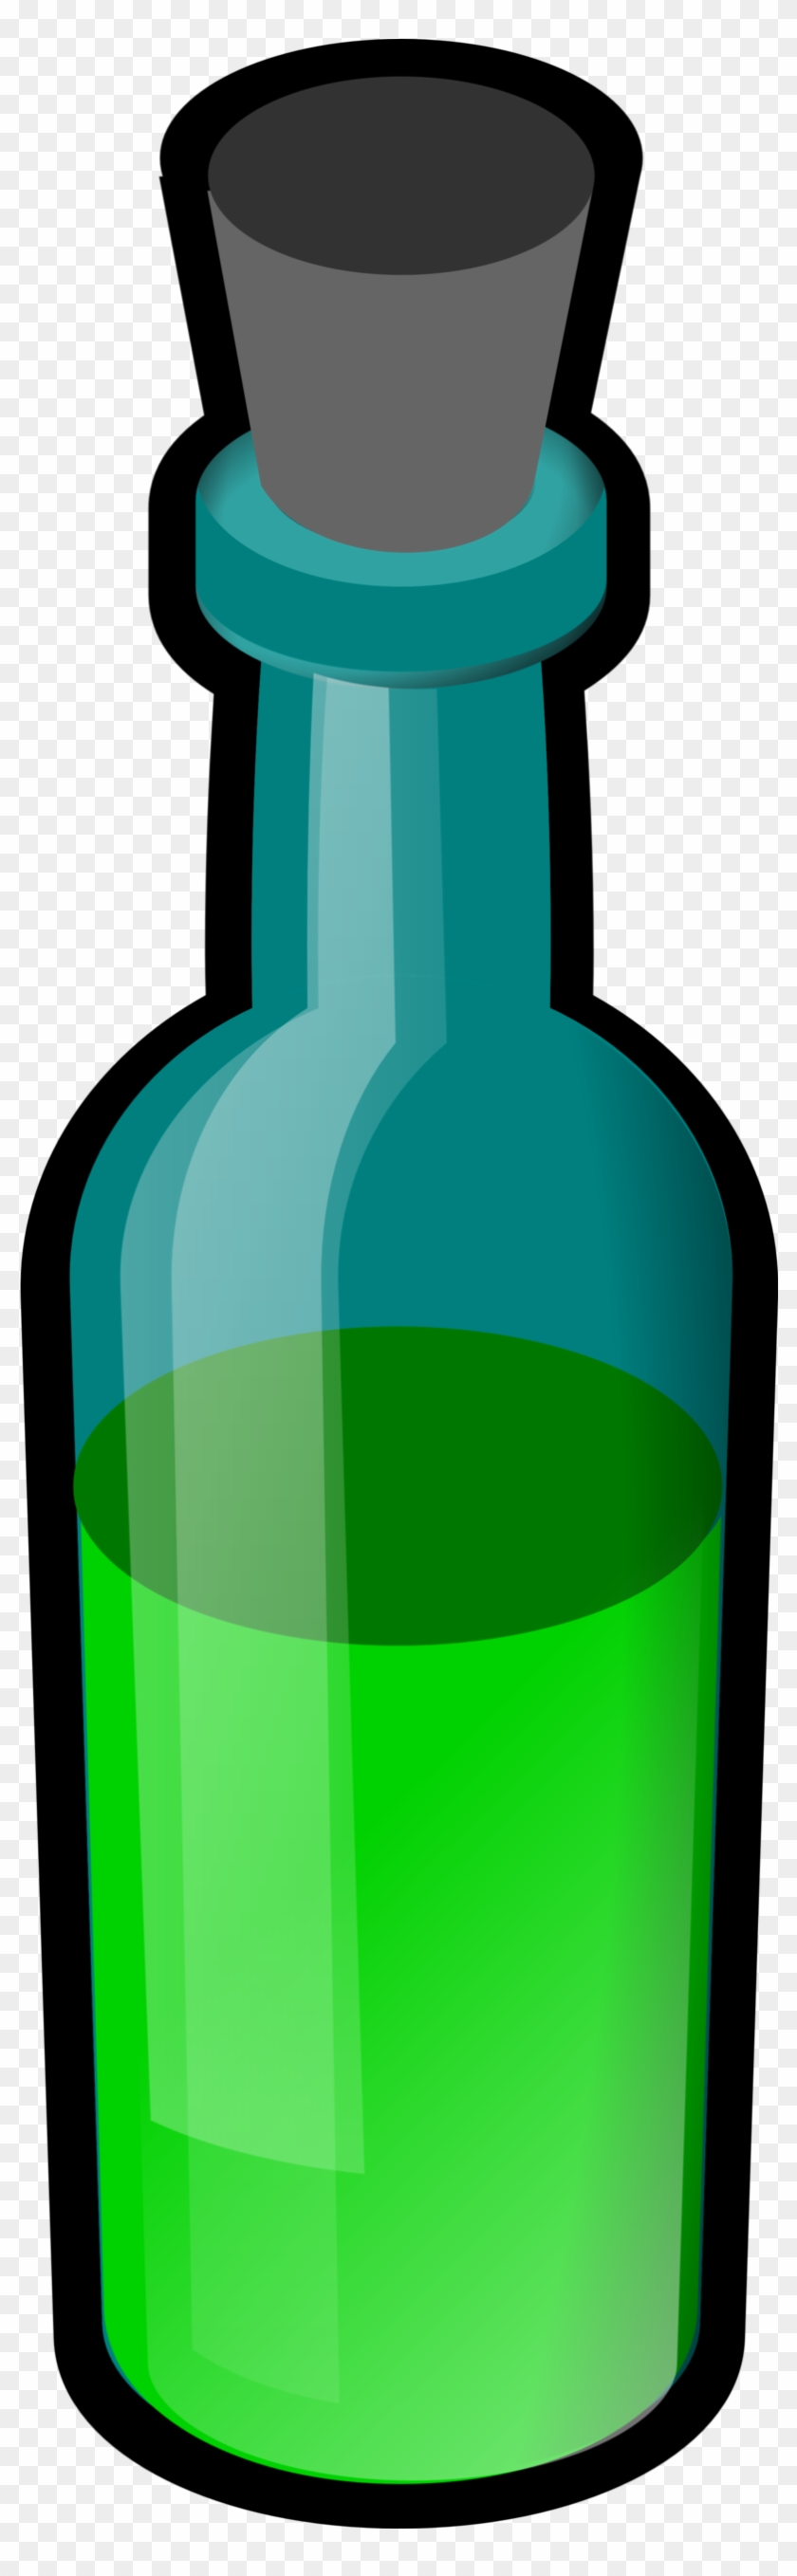 Pse Bottle - Poison Bottle Clip Art #331283